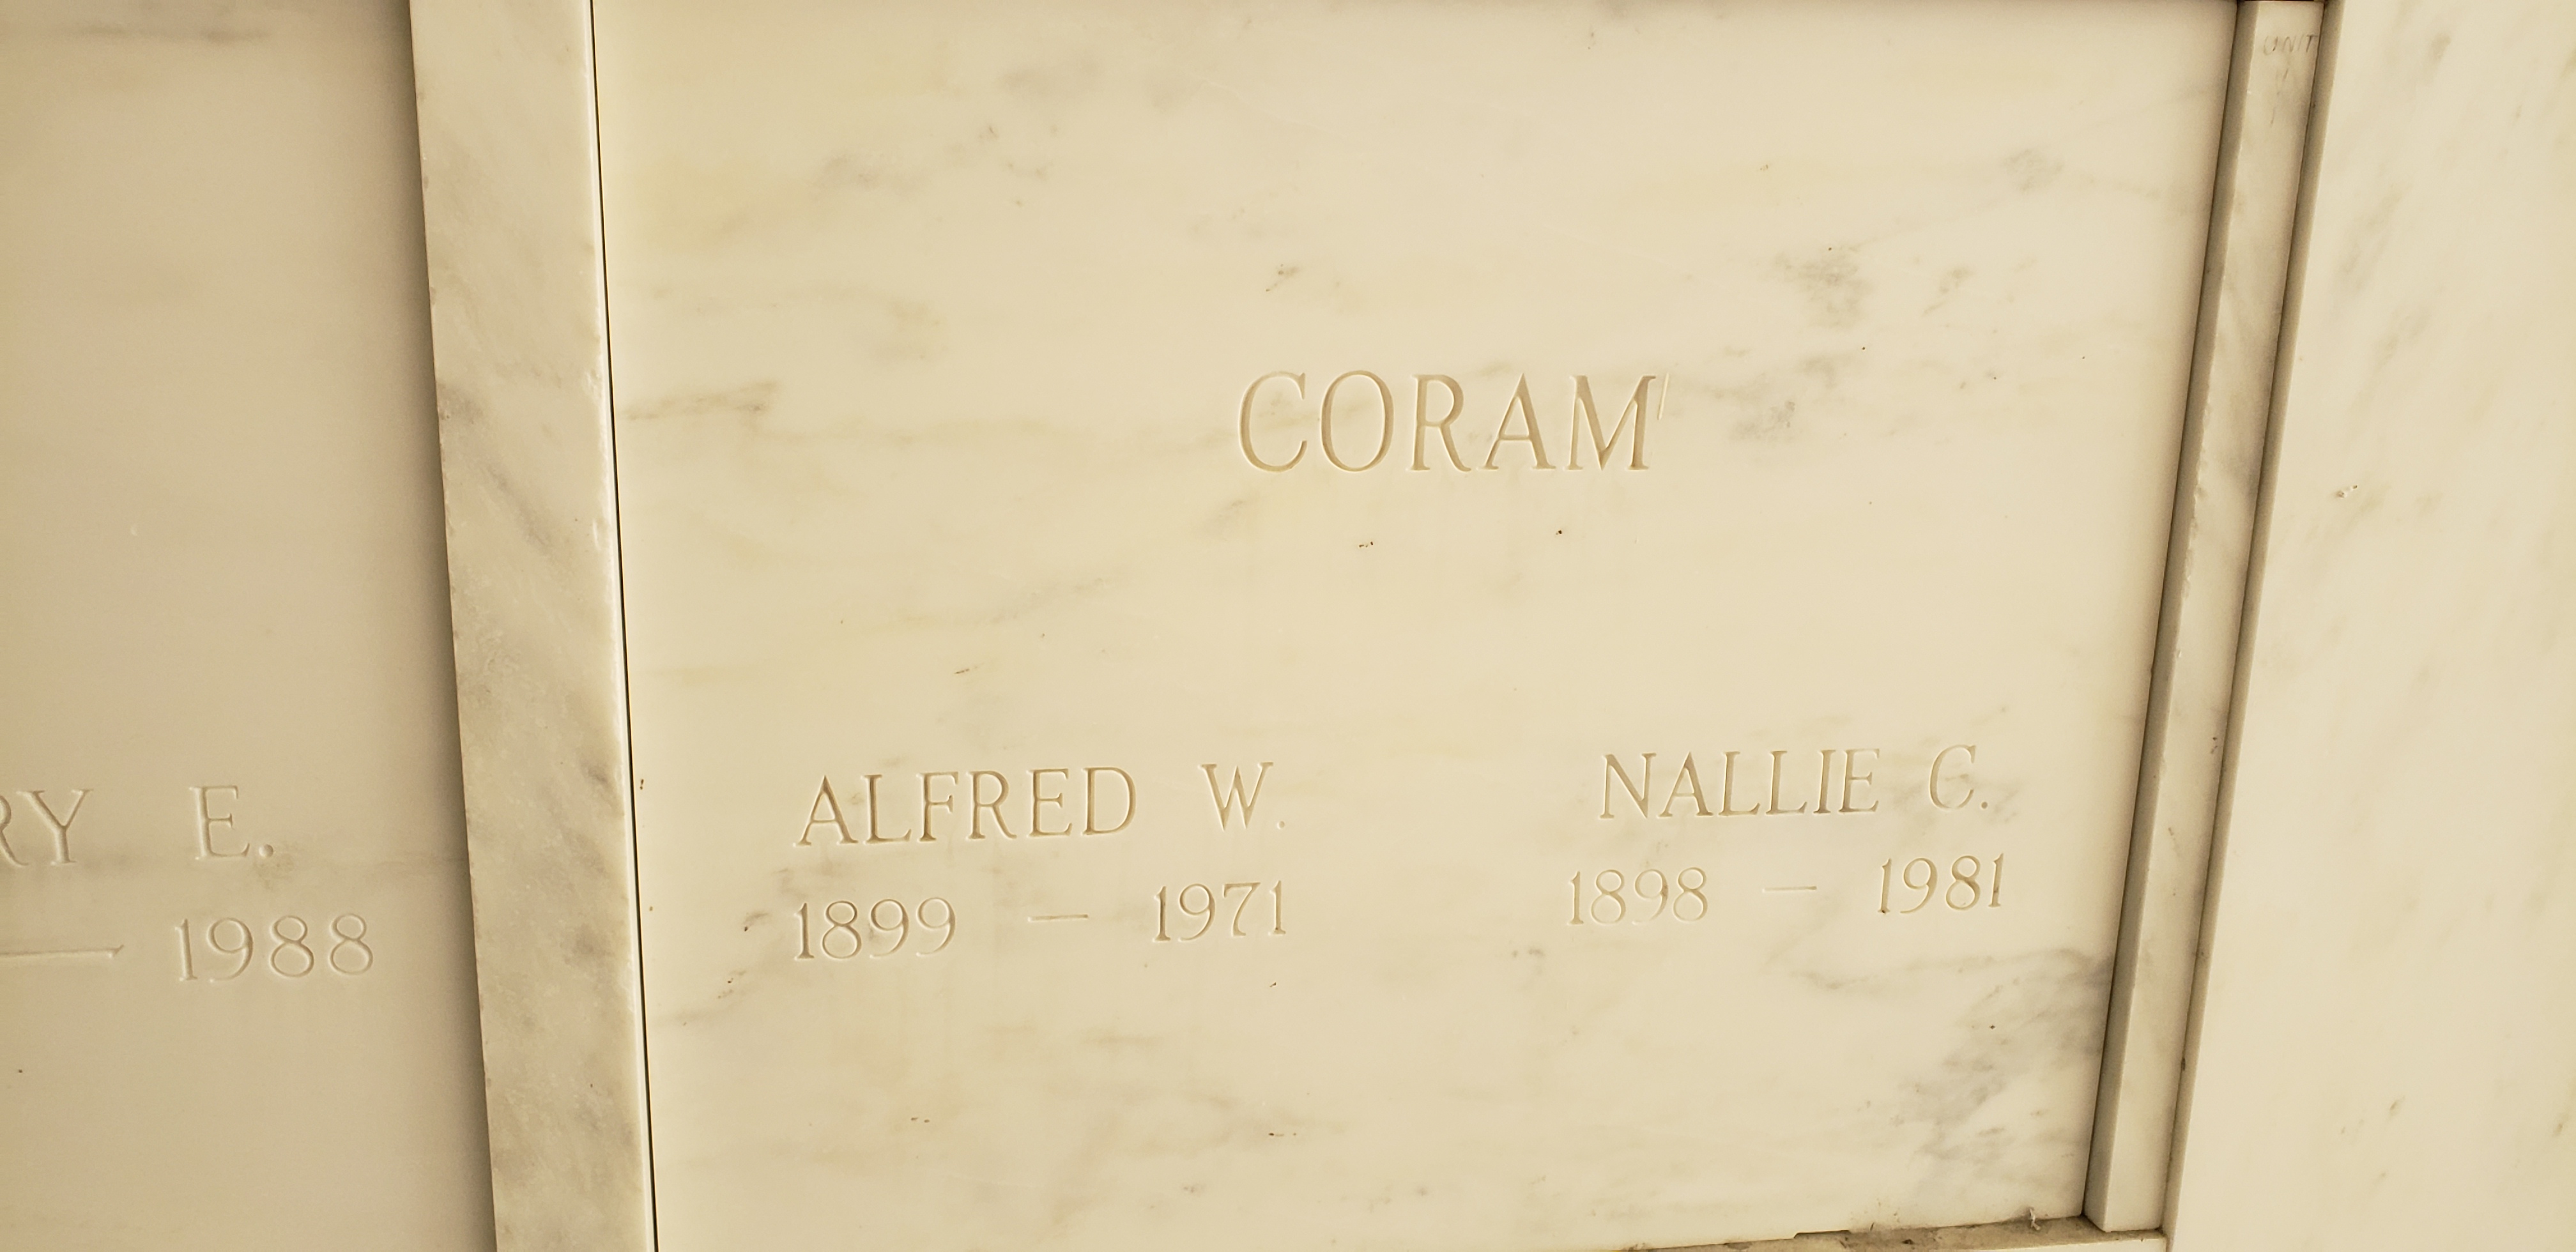 Alfred W Coram